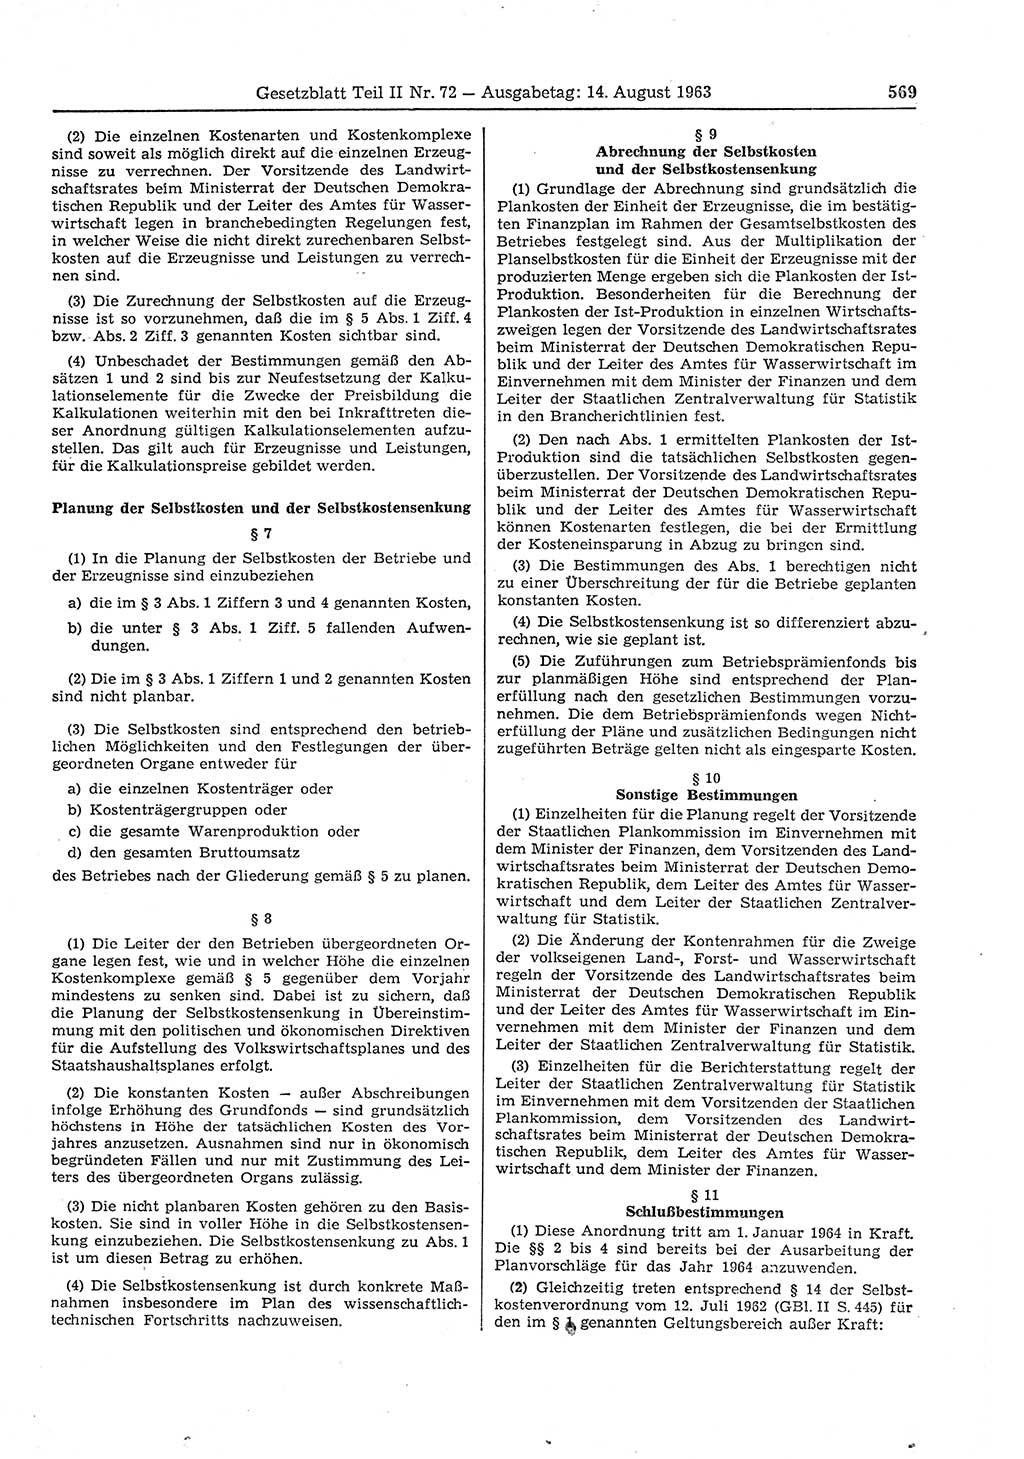 Gesetzblatt (GBl.) der Deutschen Demokratischen Republik (DDR) Teil ⅠⅠ 1963, Seite 569 (GBl. DDR ⅠⅠ 1963, S. 569)